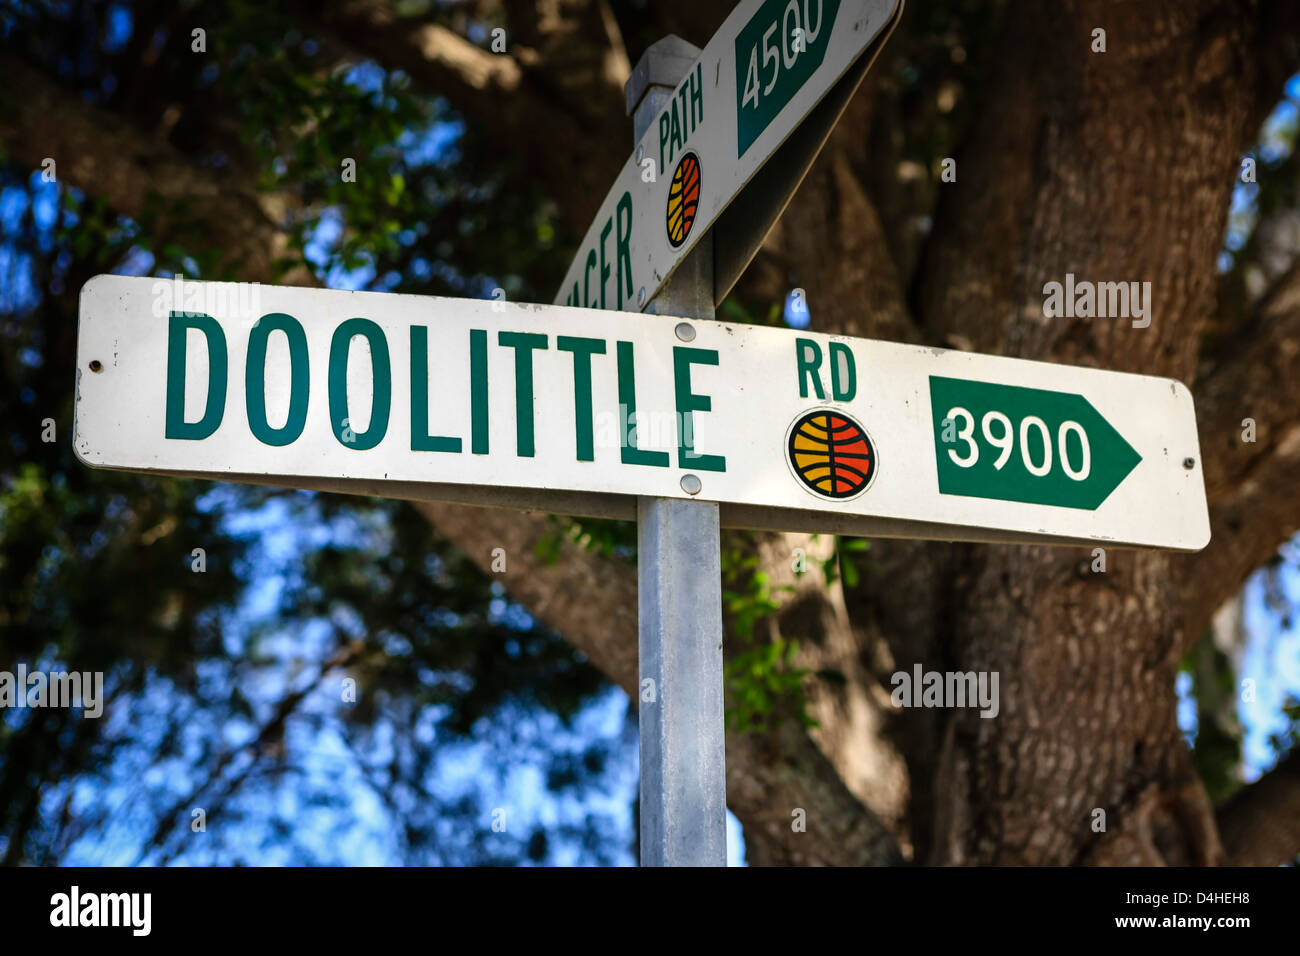 Doolittle Road on the Sun n Fun Airfield at Lakeland Florida Stock Photo